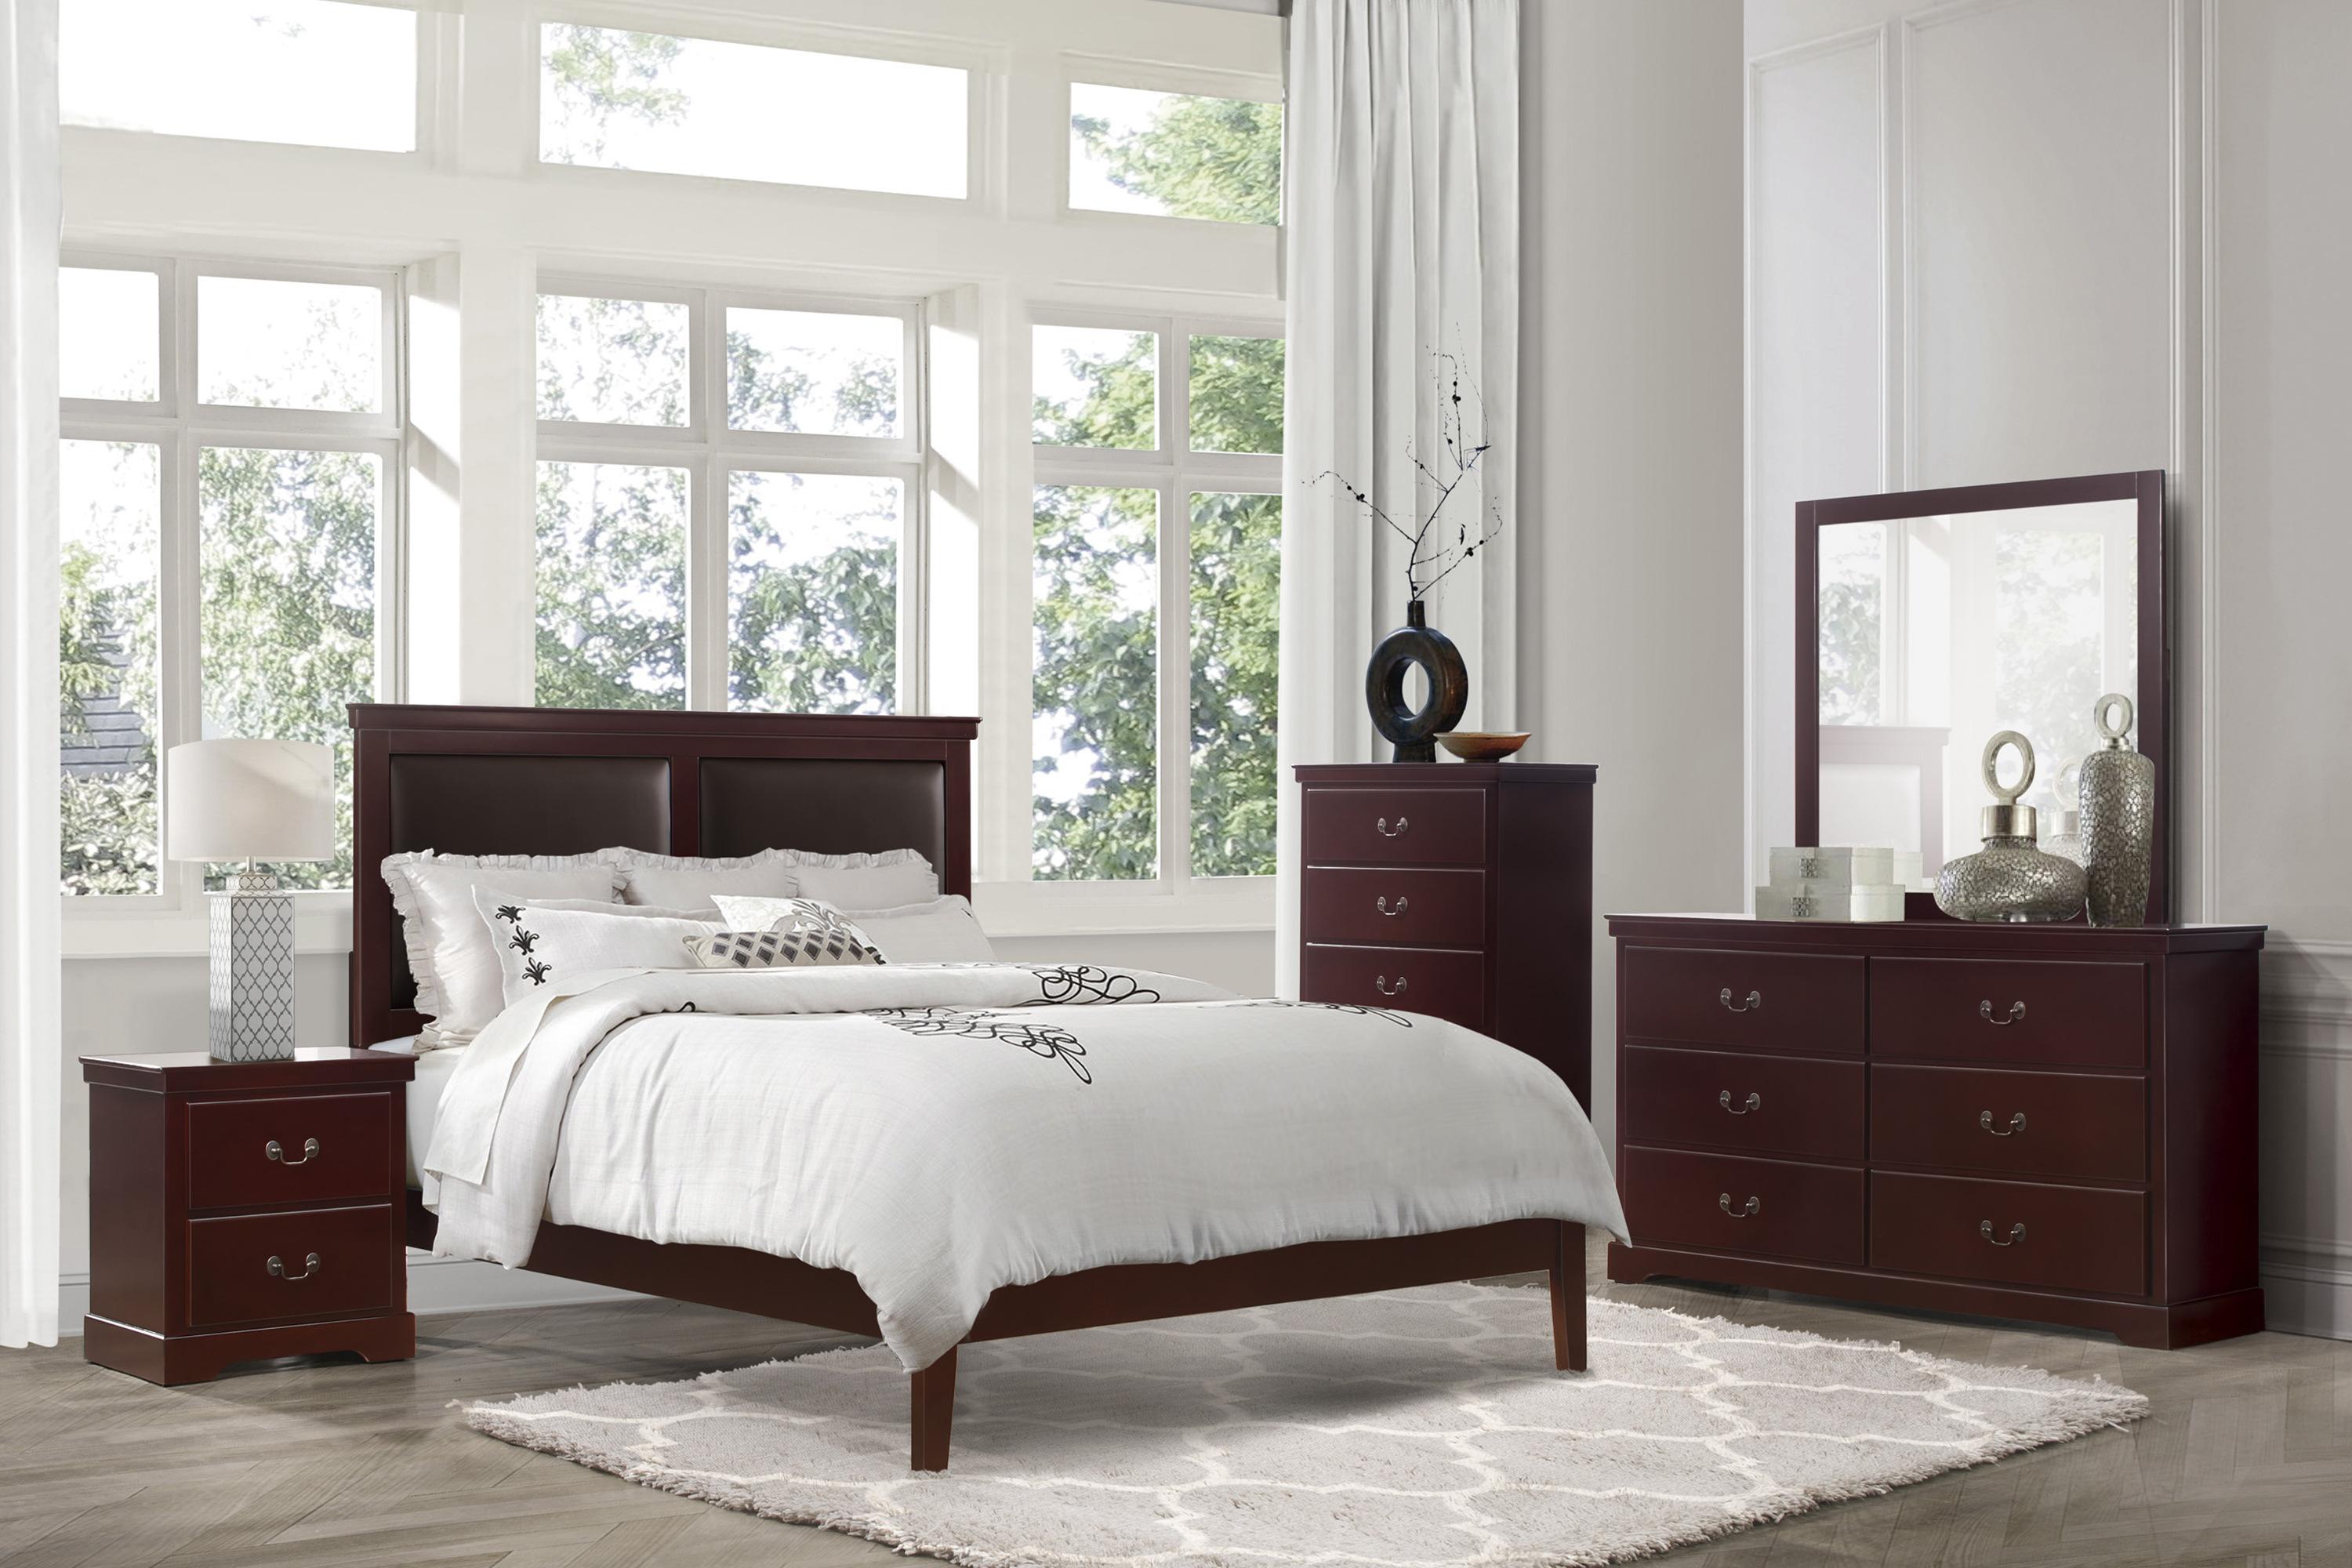 

    
Modern Cherry Wood King Bedroom Set 6pcs Homelegance 1519CHK-1EK* Seabright
